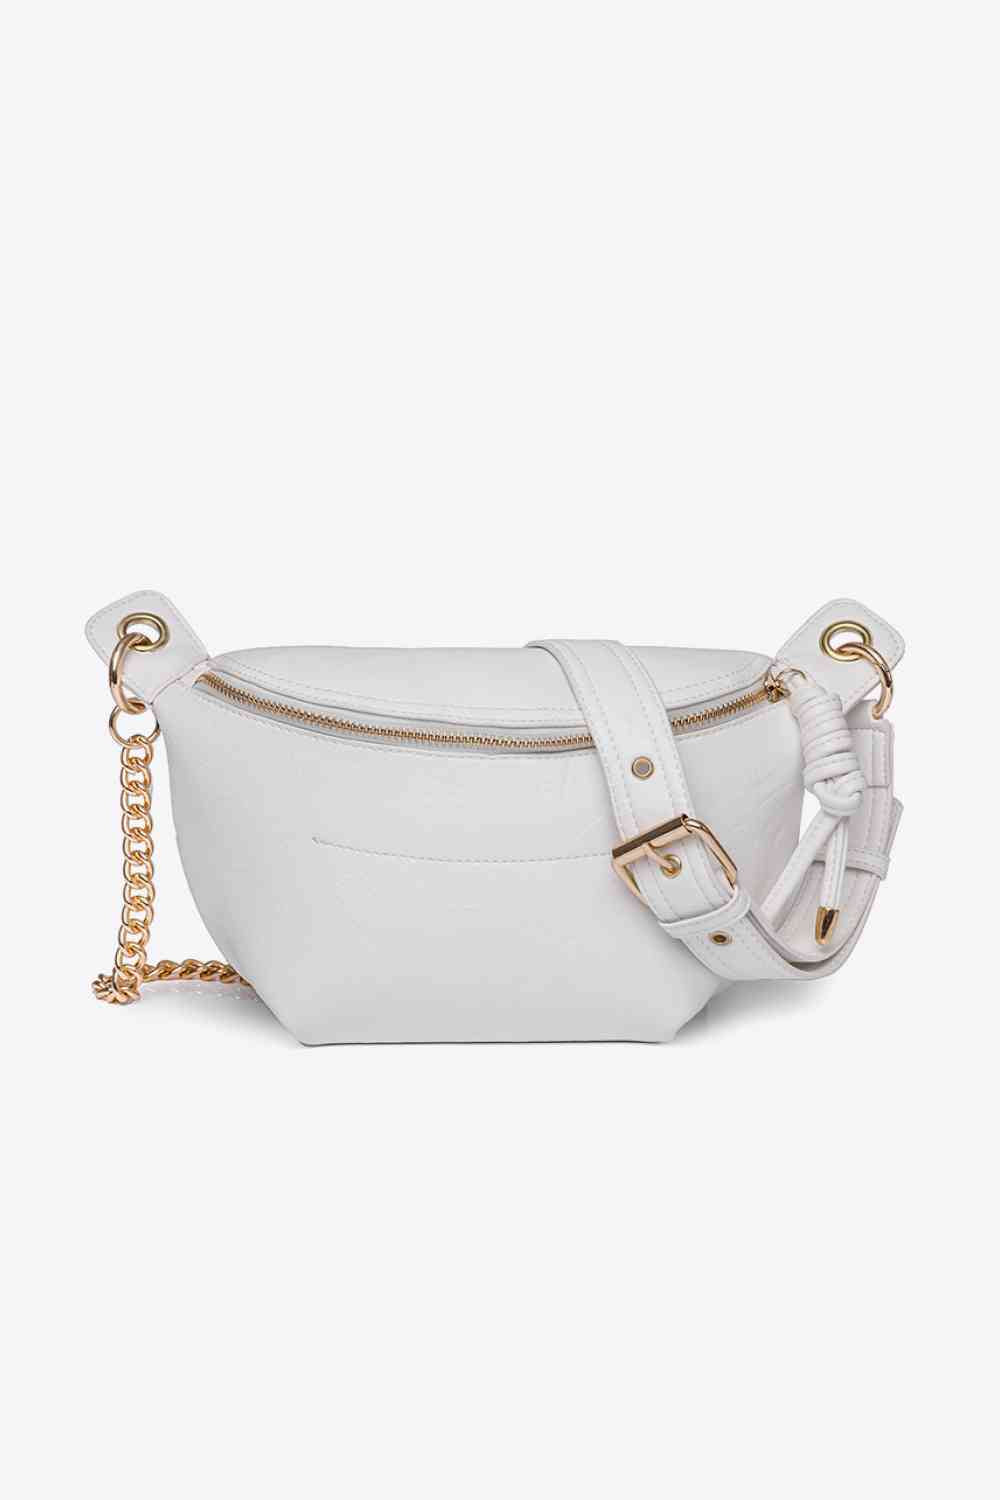 TEEK - PU Leather Chain Strap Crossbody Bag BAG TEEK Trend White  